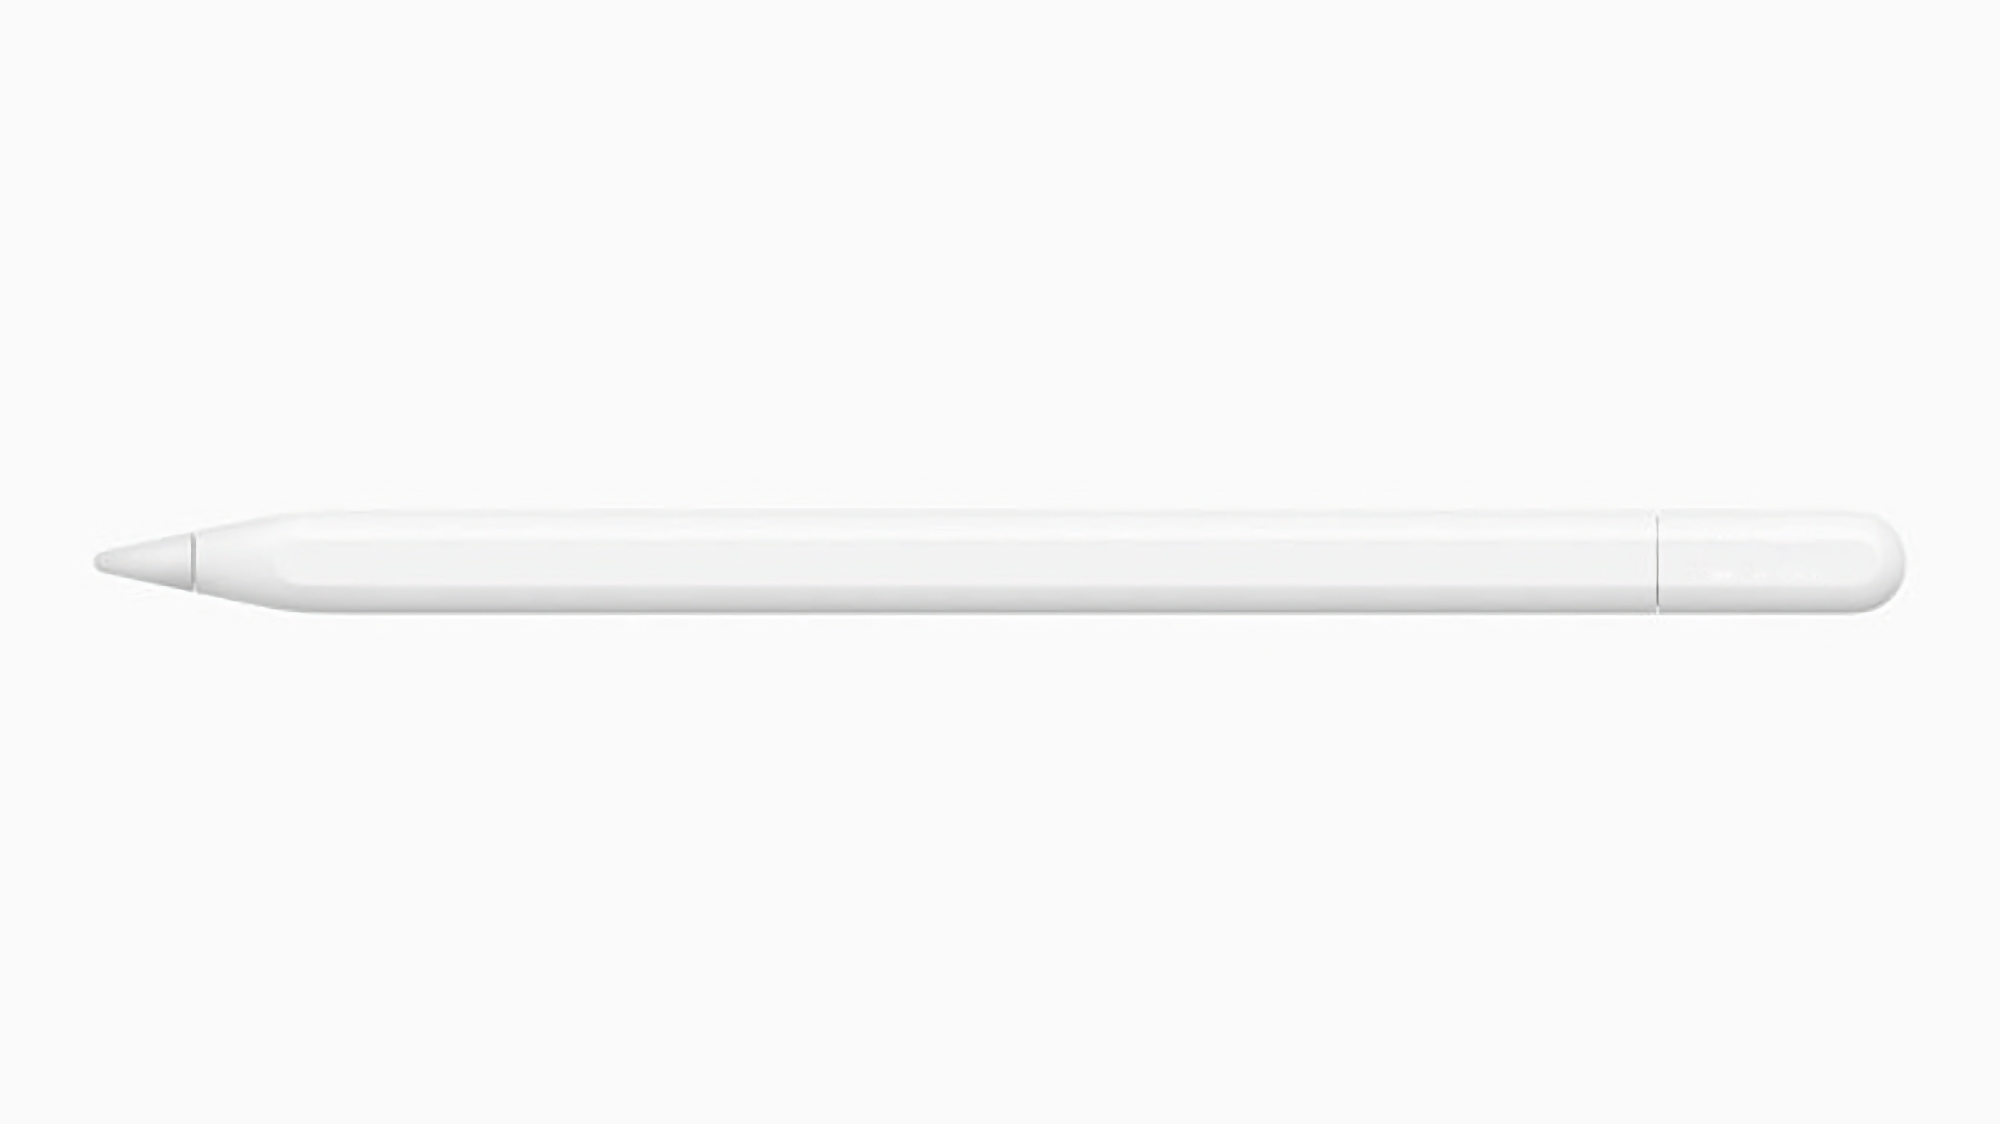 El Apple Pencil 3 tendrá soporte para un nuevo gesto de apretón